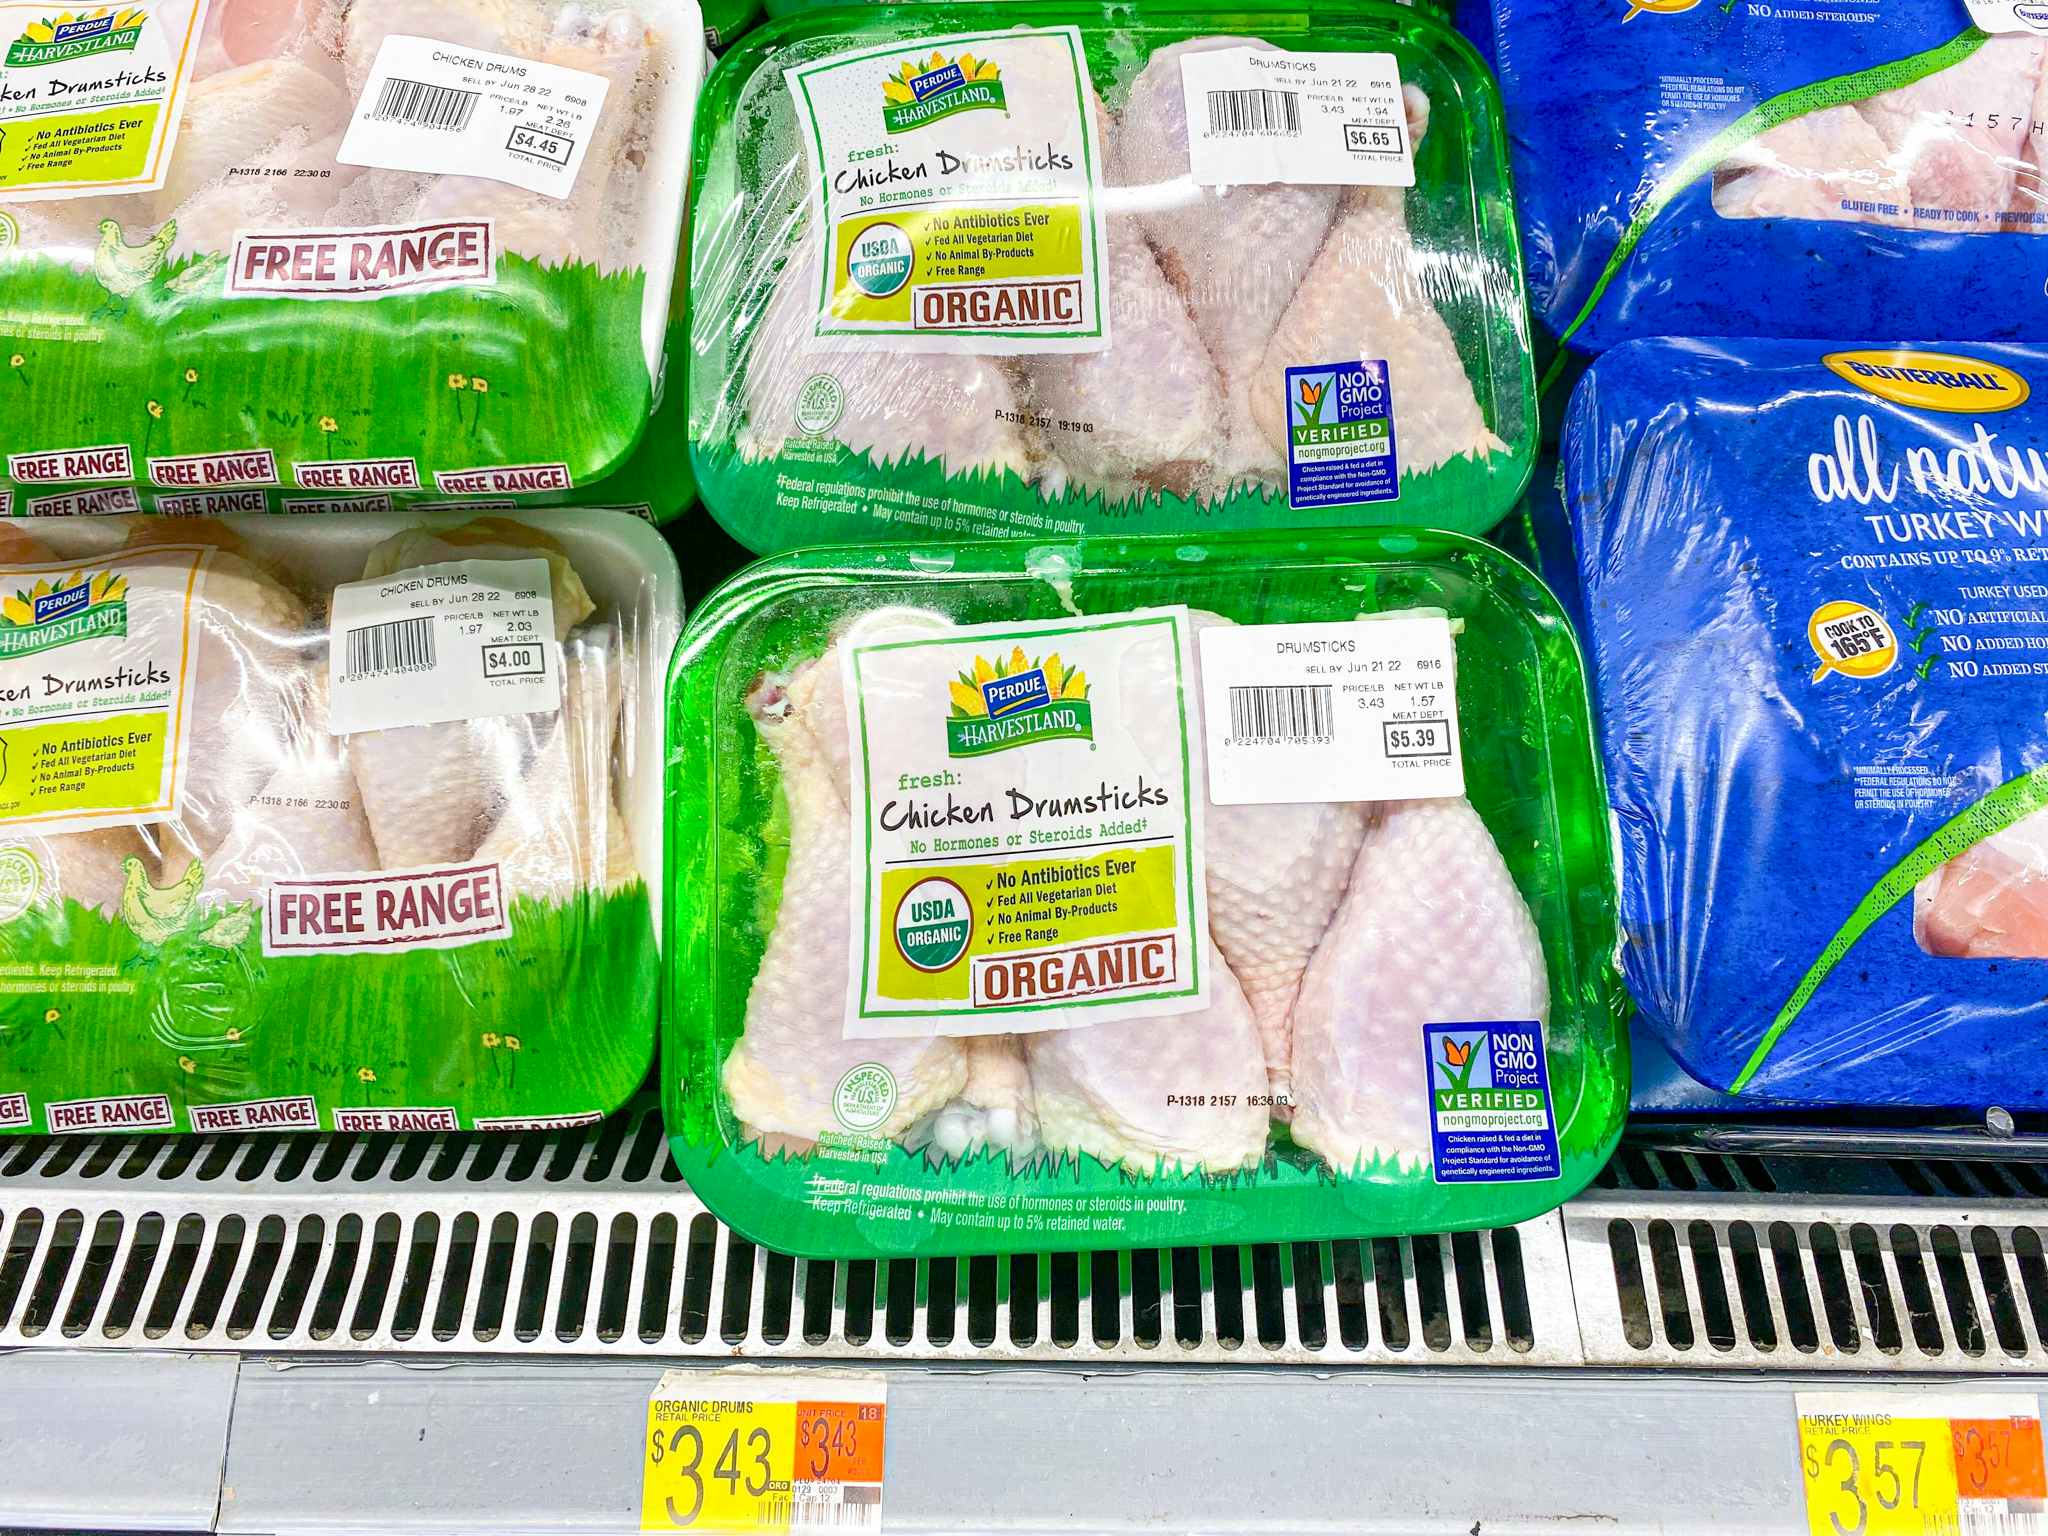 Perdue Harvestland Chicken Drumsticks on shelf at Walmart. Price sticker reads $3.43 per pound.